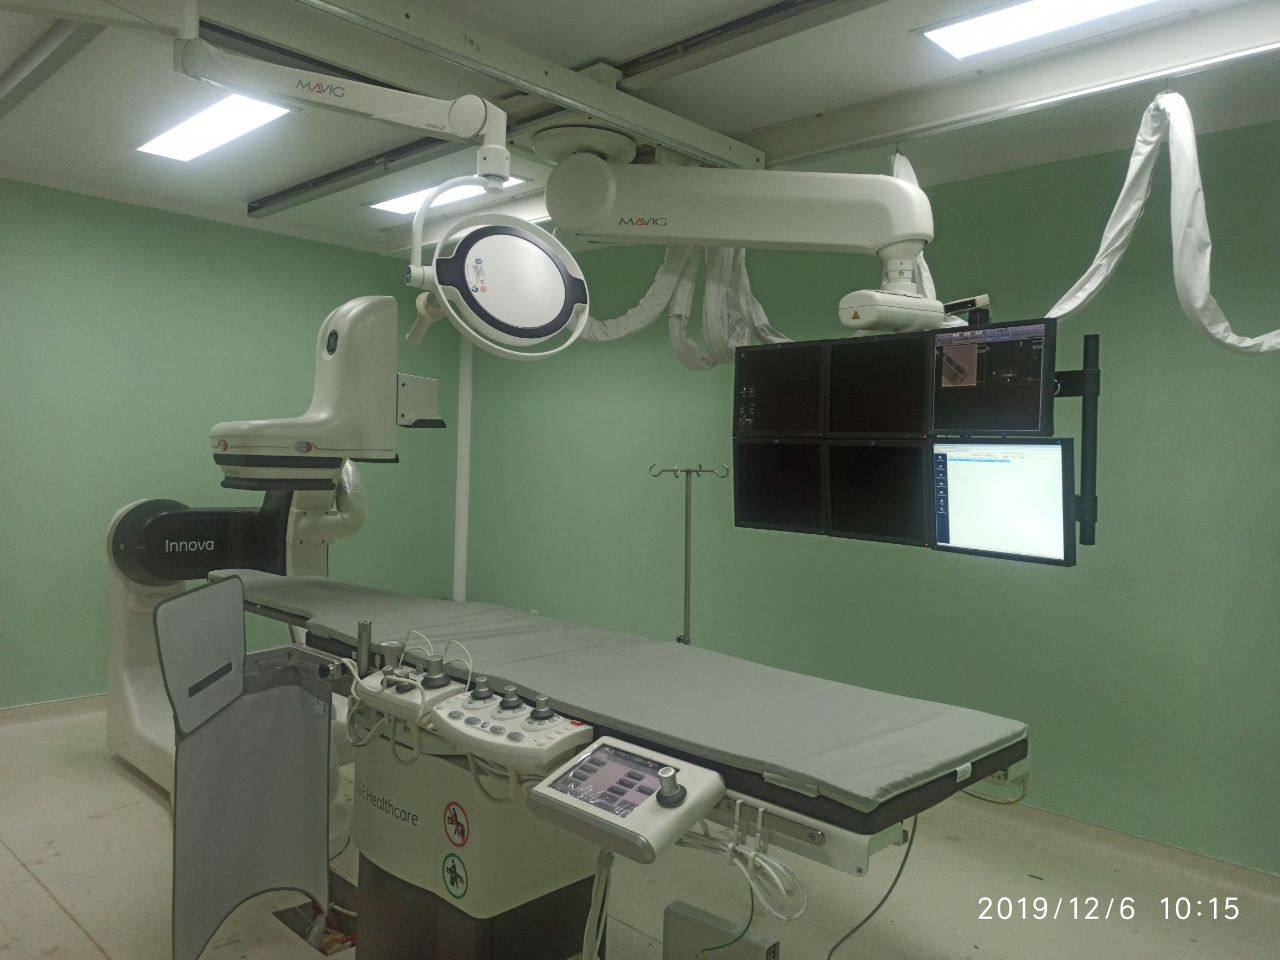 Cath Lab Seharga Rp 14 Miliar Tersedia di RSUD Bontang, Operasi Jantung Tak Perlu ke Luar Daerah